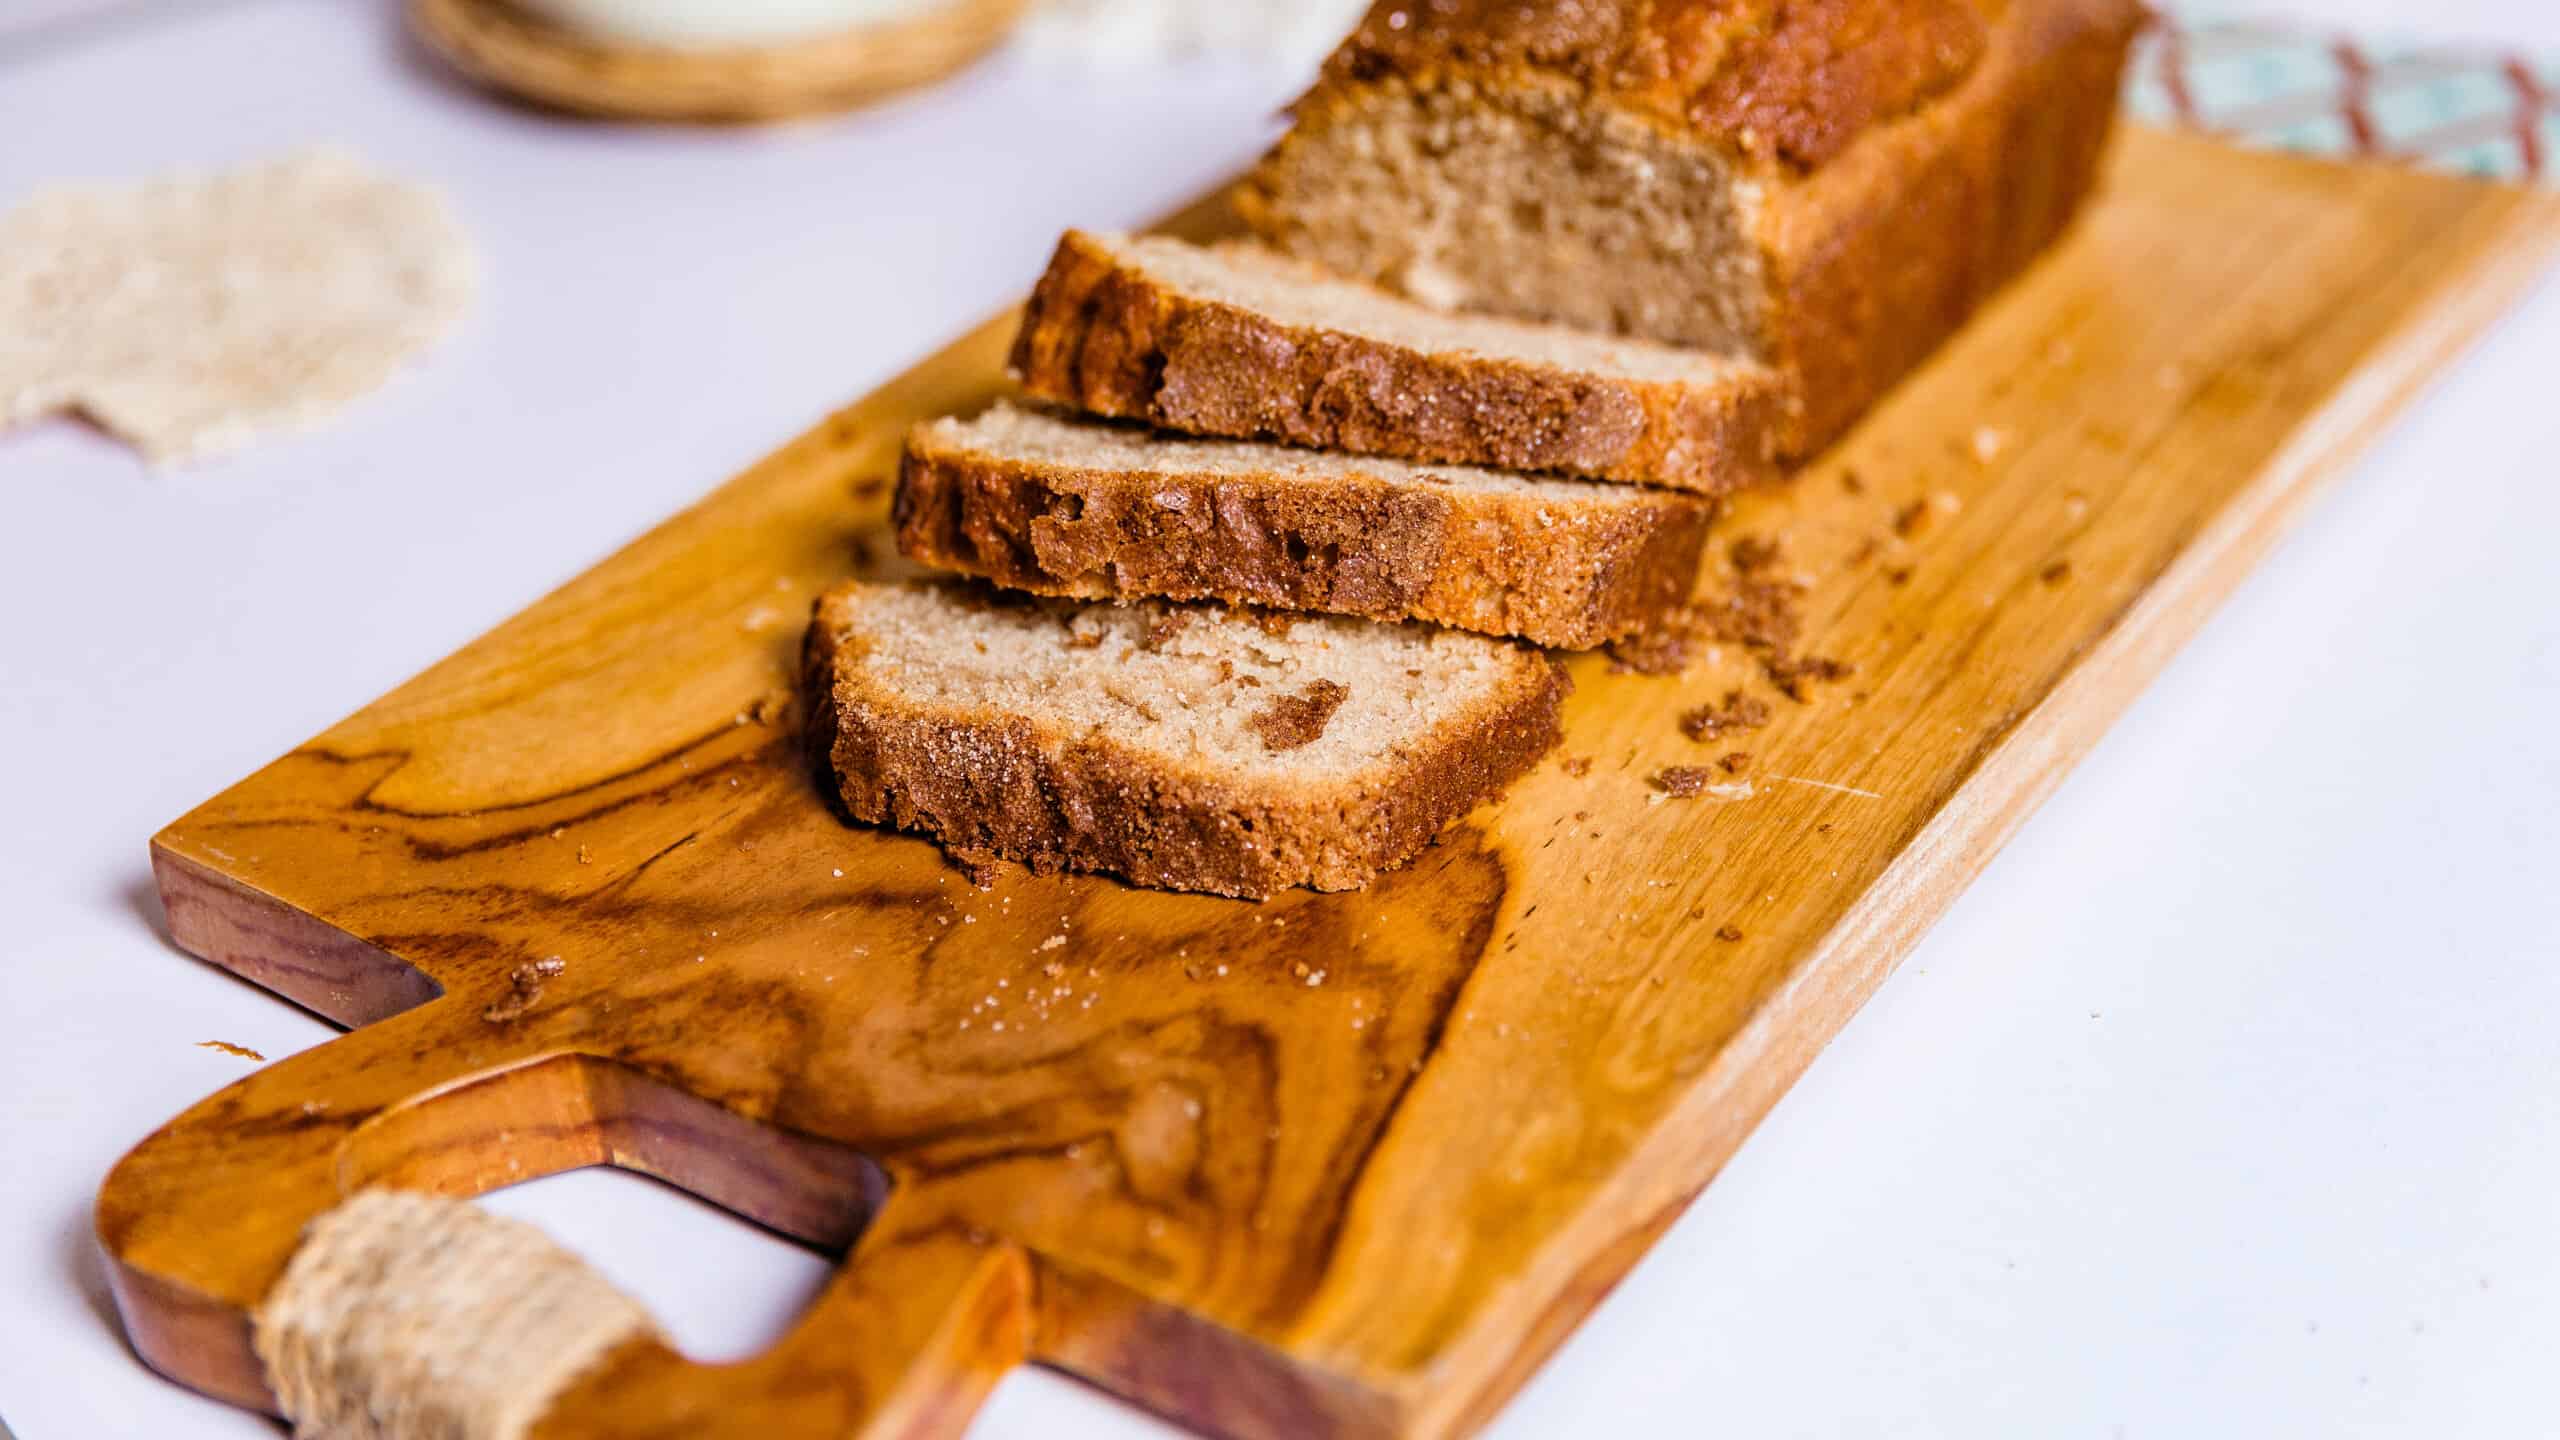 Amish Friendship Bread Recipe and Starter Recipe